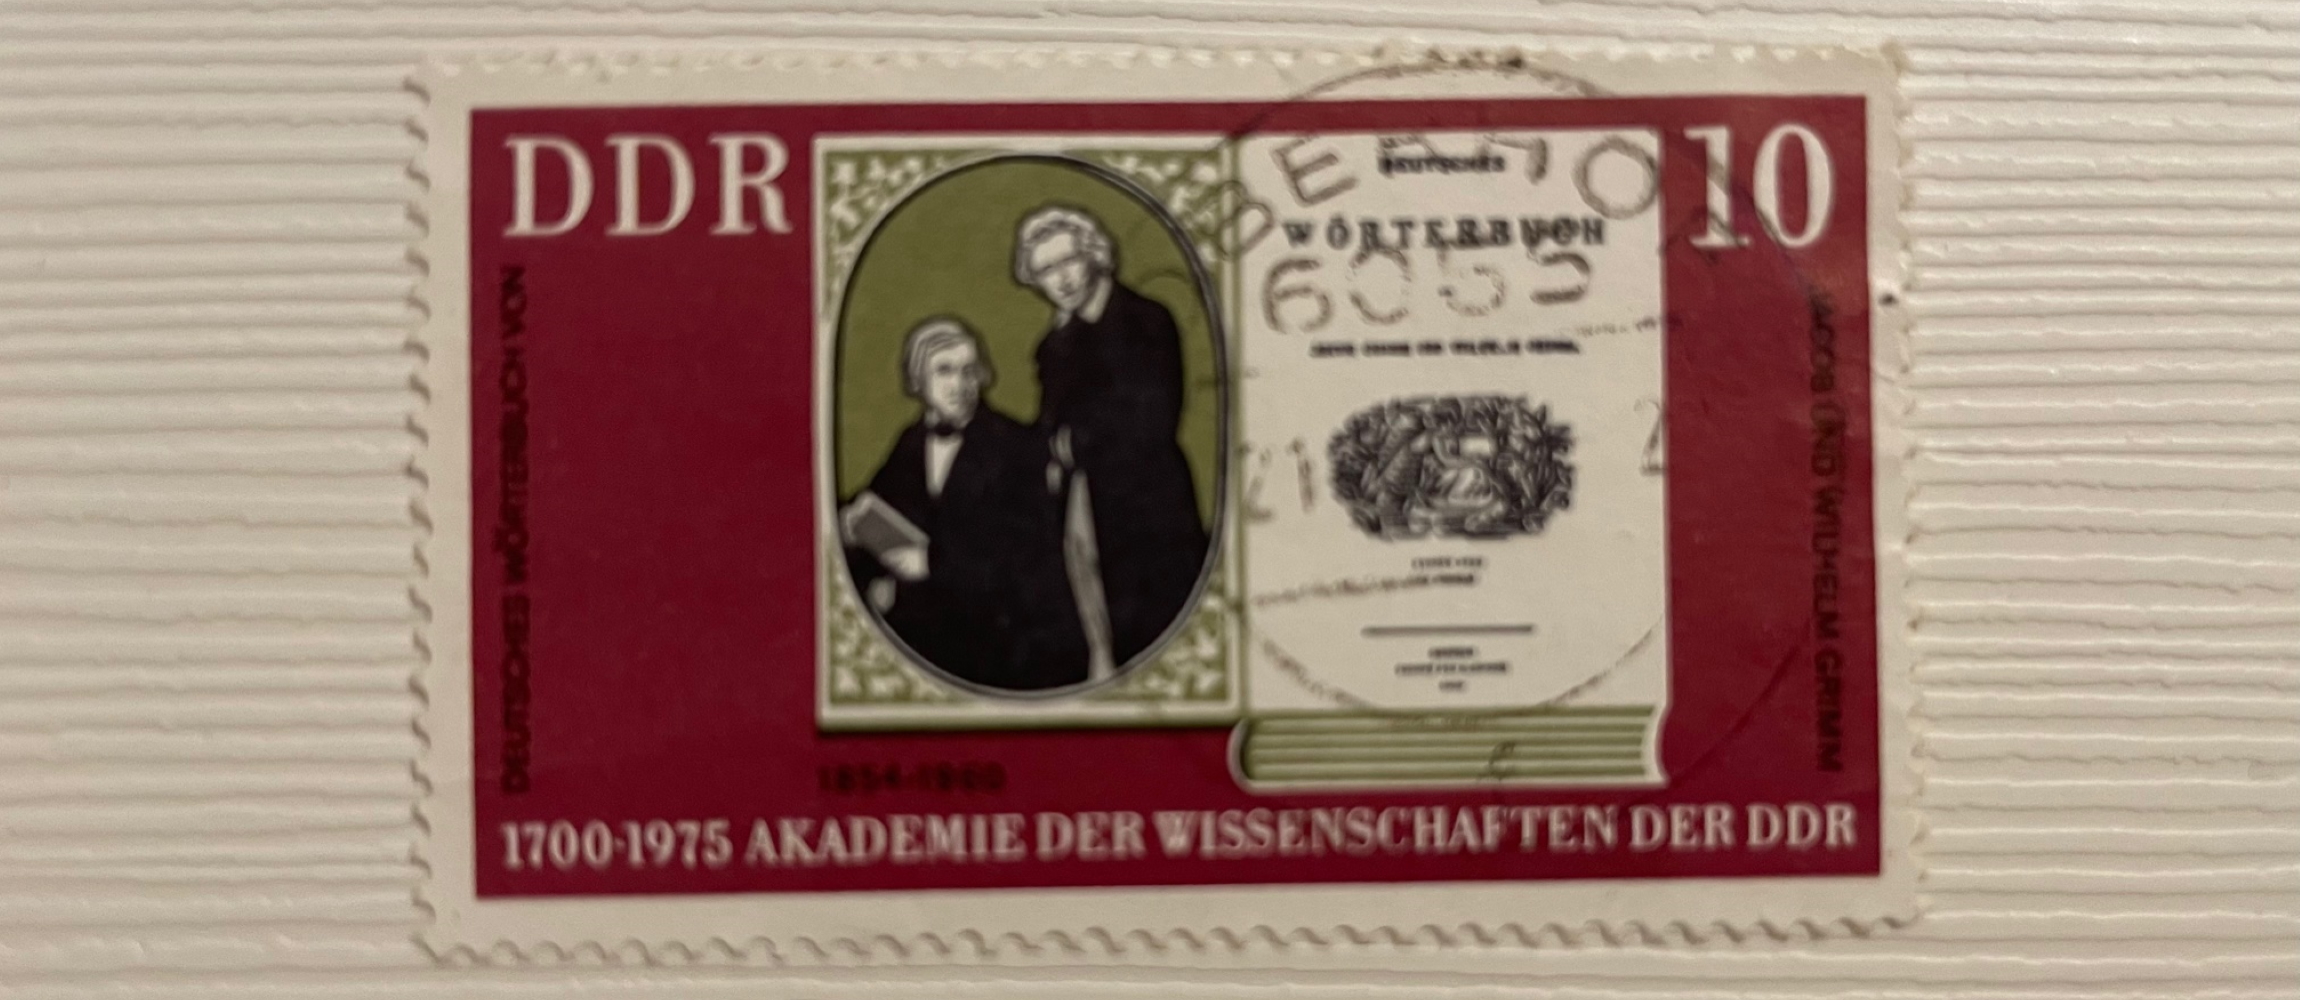 Gebrüder Grimm Briefmarke